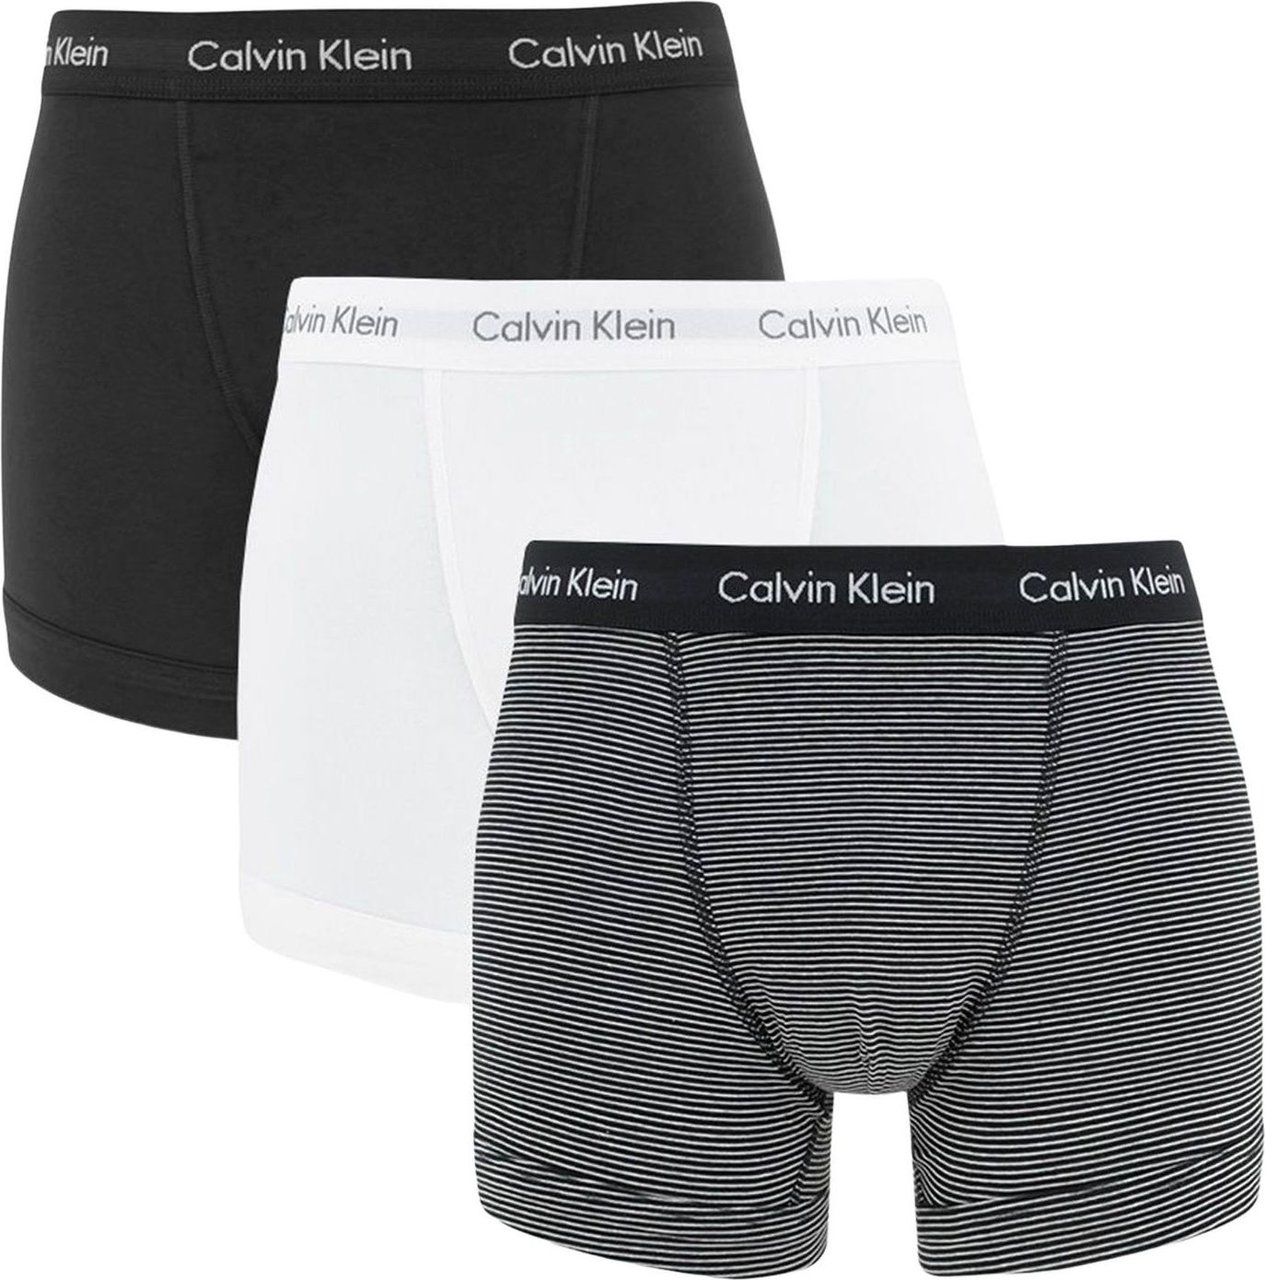 Calvin Klein 3-Pack Boxershorts Zwart Zwart